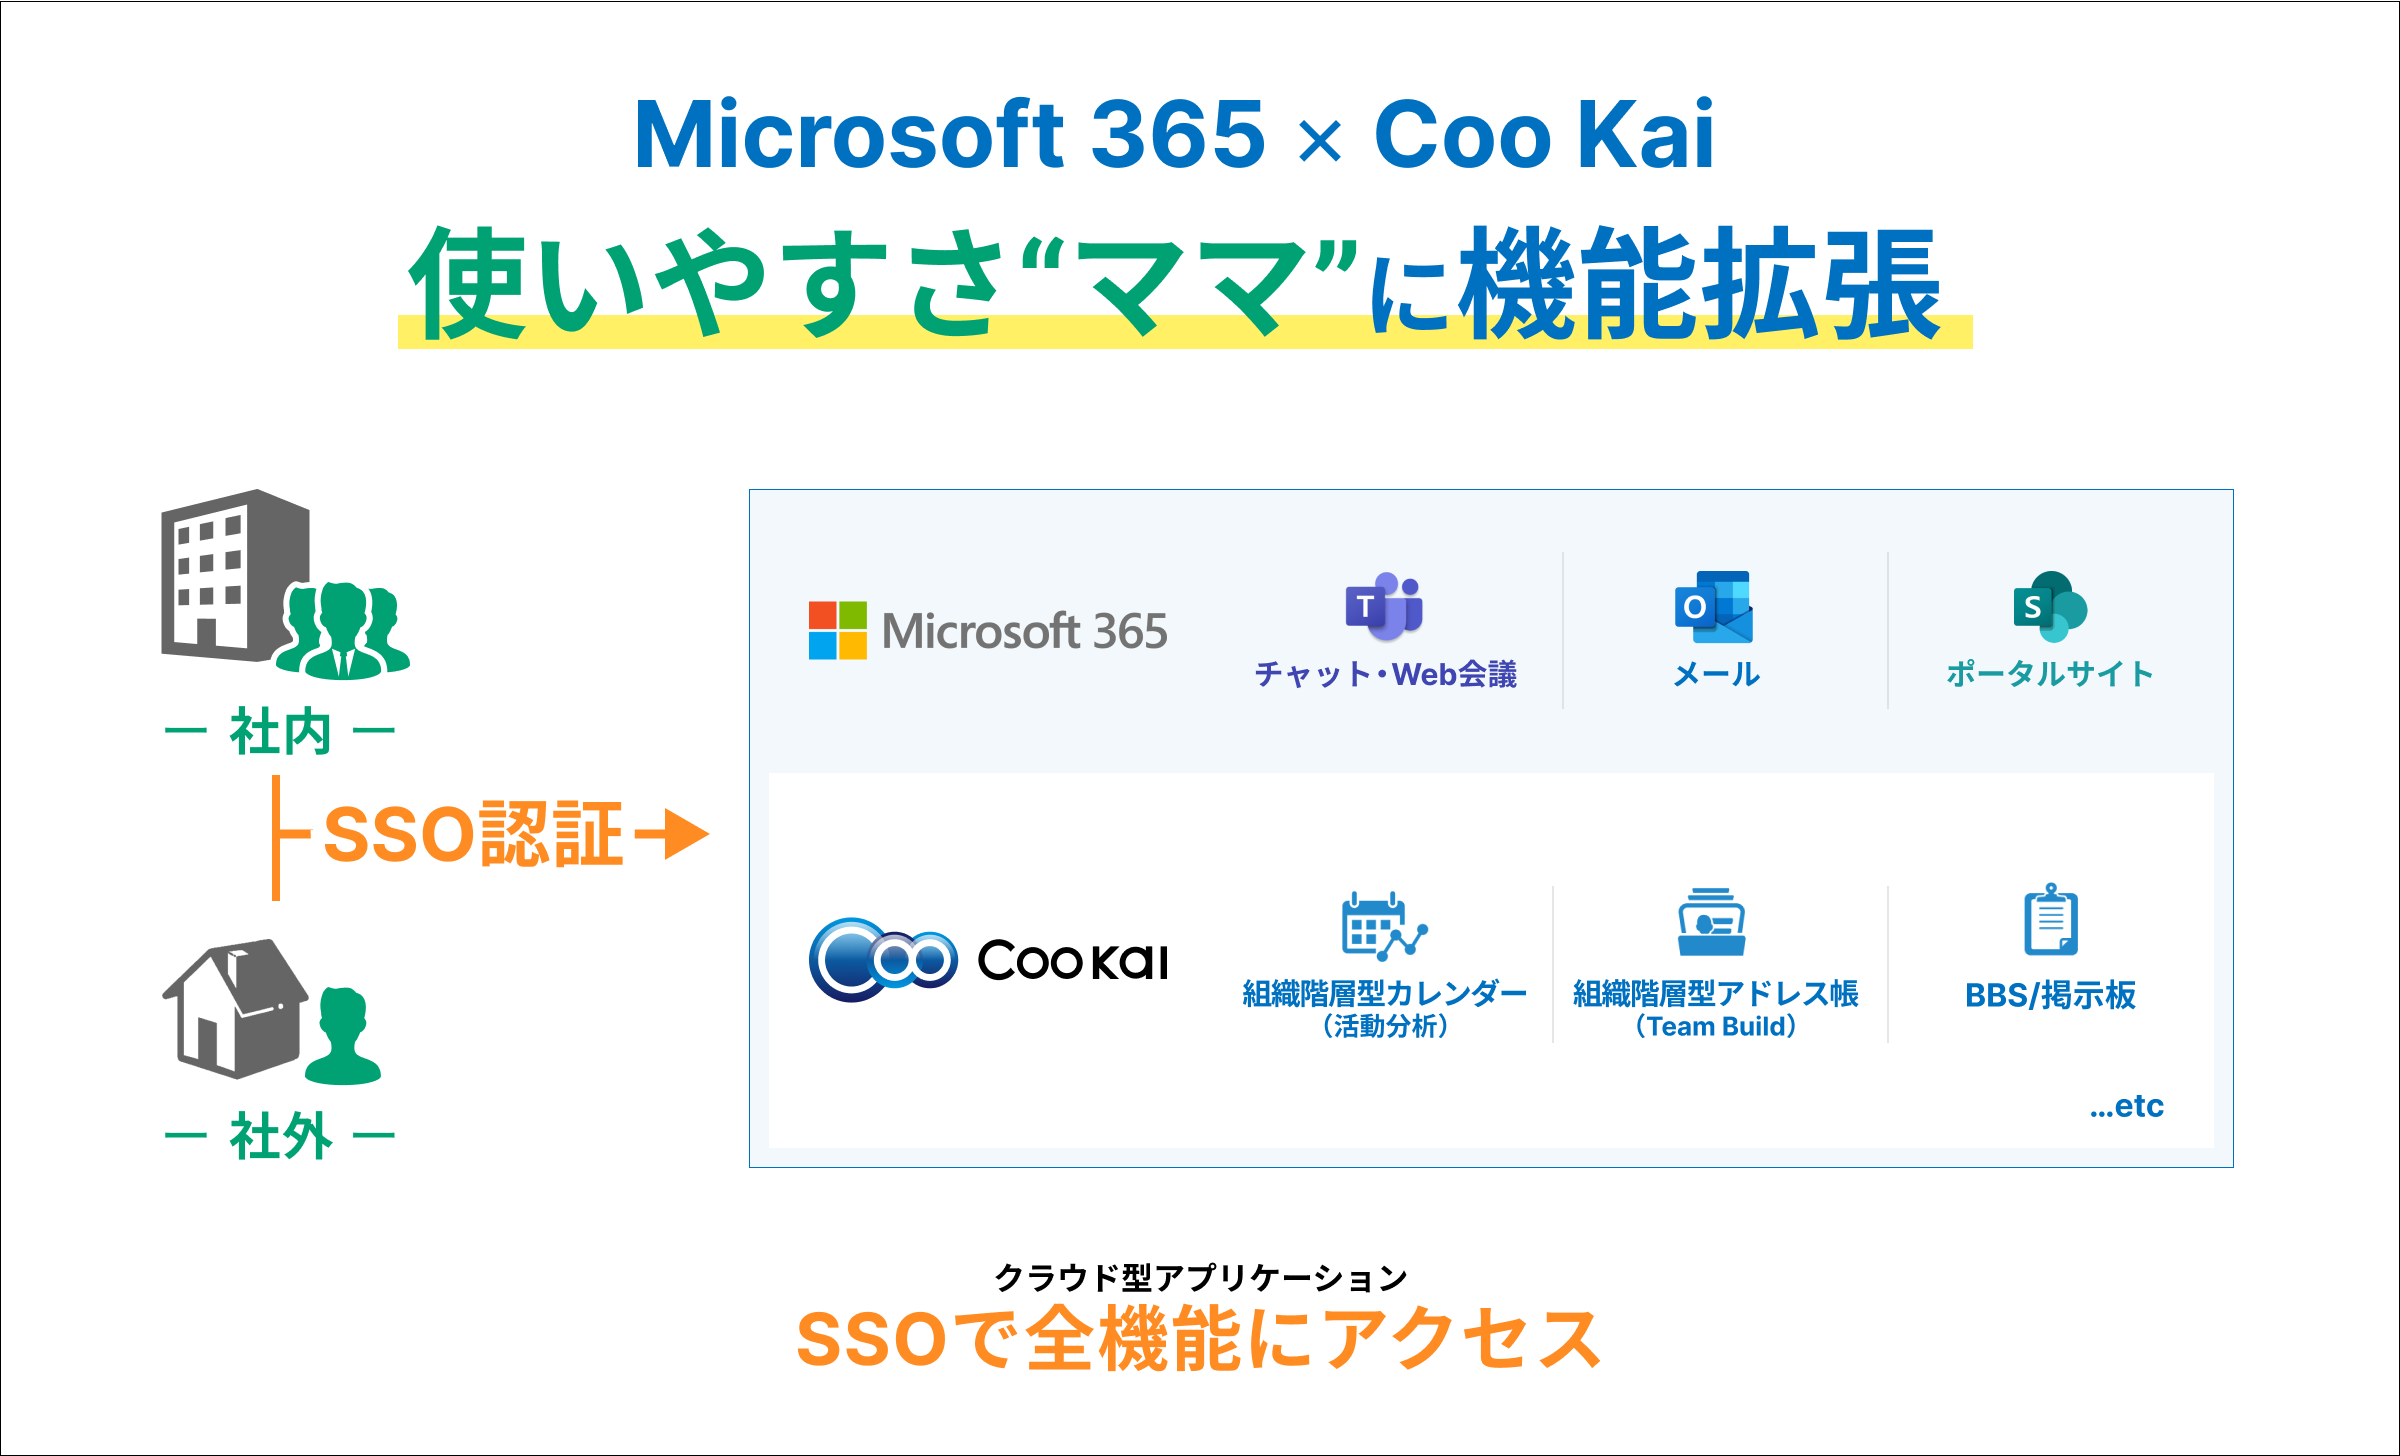 使いやすさそのままに、Microsoft 365の機能を拡張